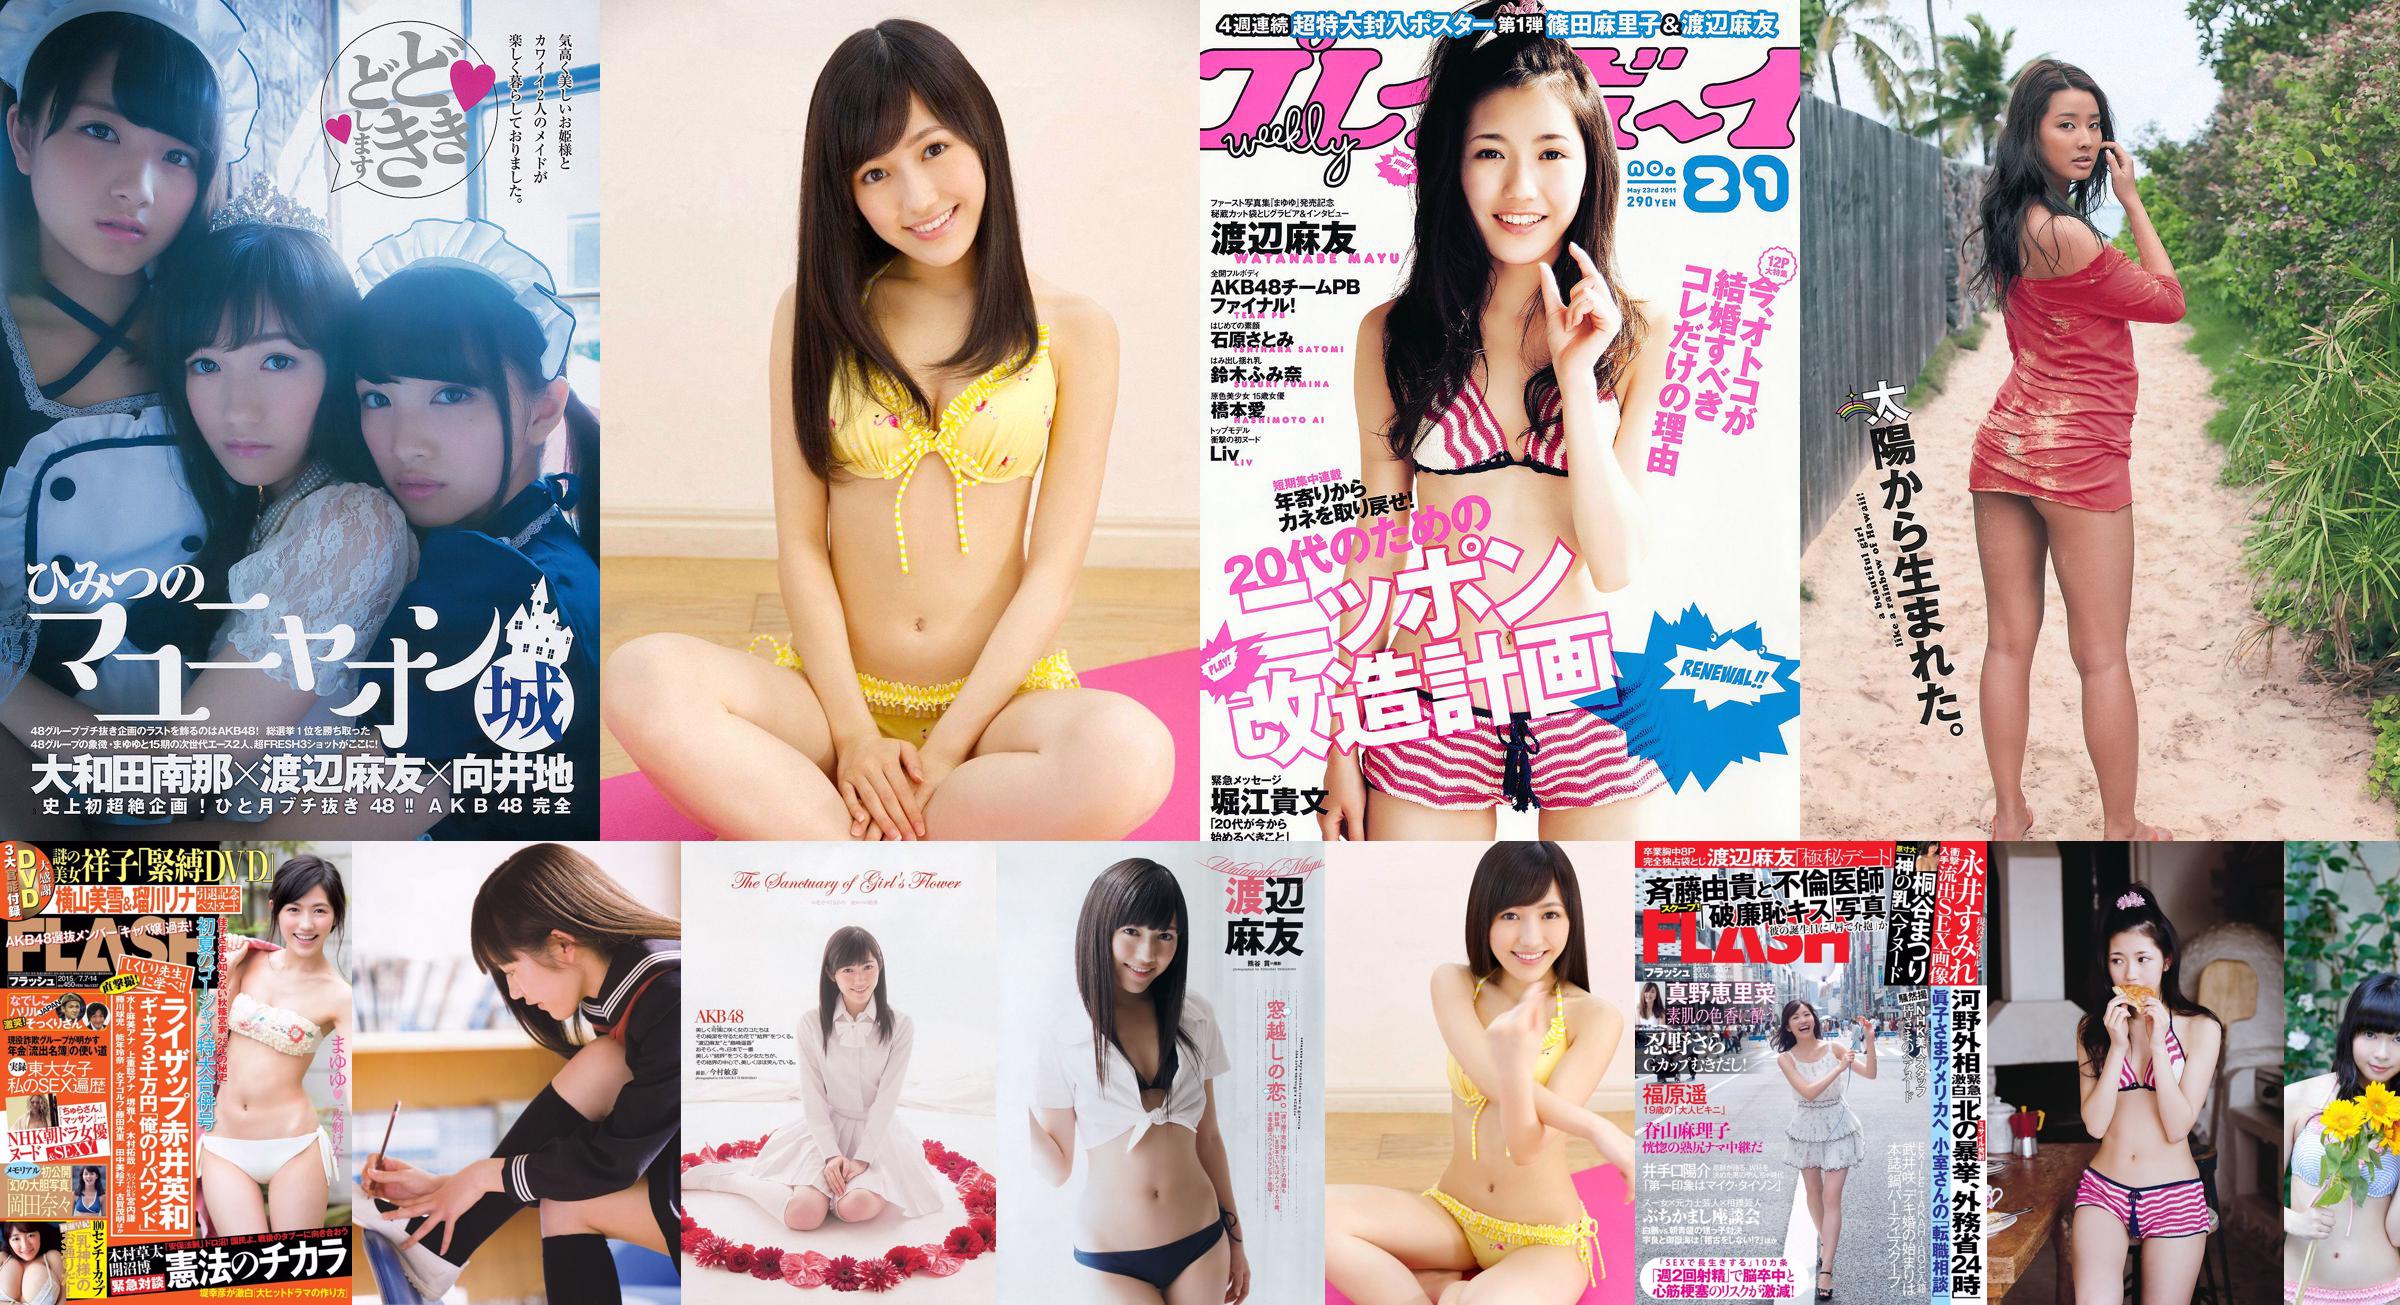 Mayu Watanabe Yumi Sugimoto Anna Ishibashi Miwako Kakei SKE48 Aya Nakata Yume Hazuki [Wekelijkse Playboy] 2014 No.36 Foto Miwako No.003c97 Pagina 1